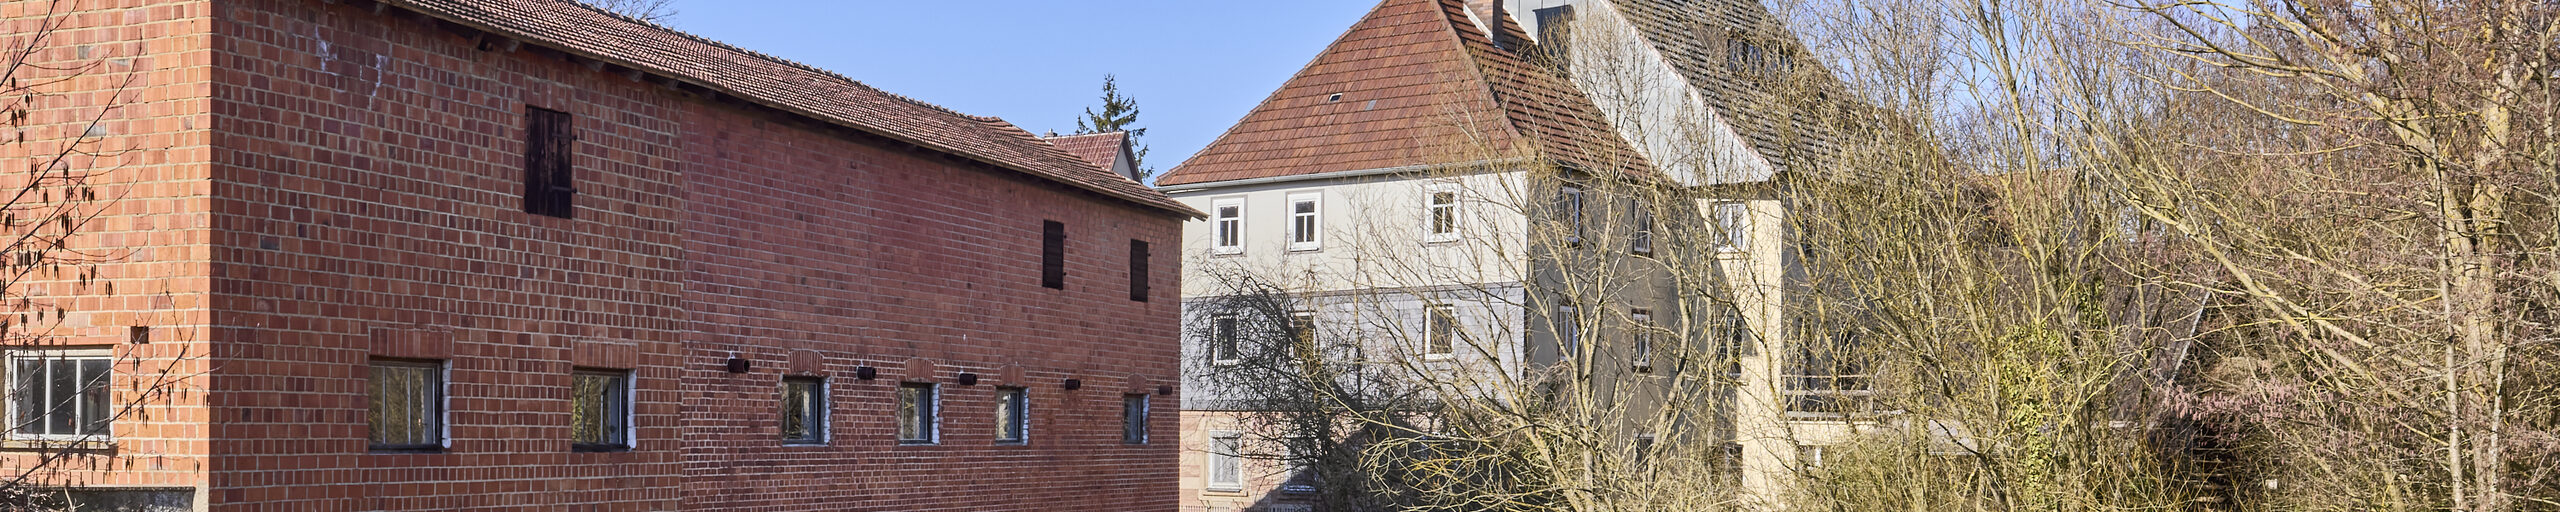 Eine Überblicksaufnahme der Bertelsdorfer Mühle